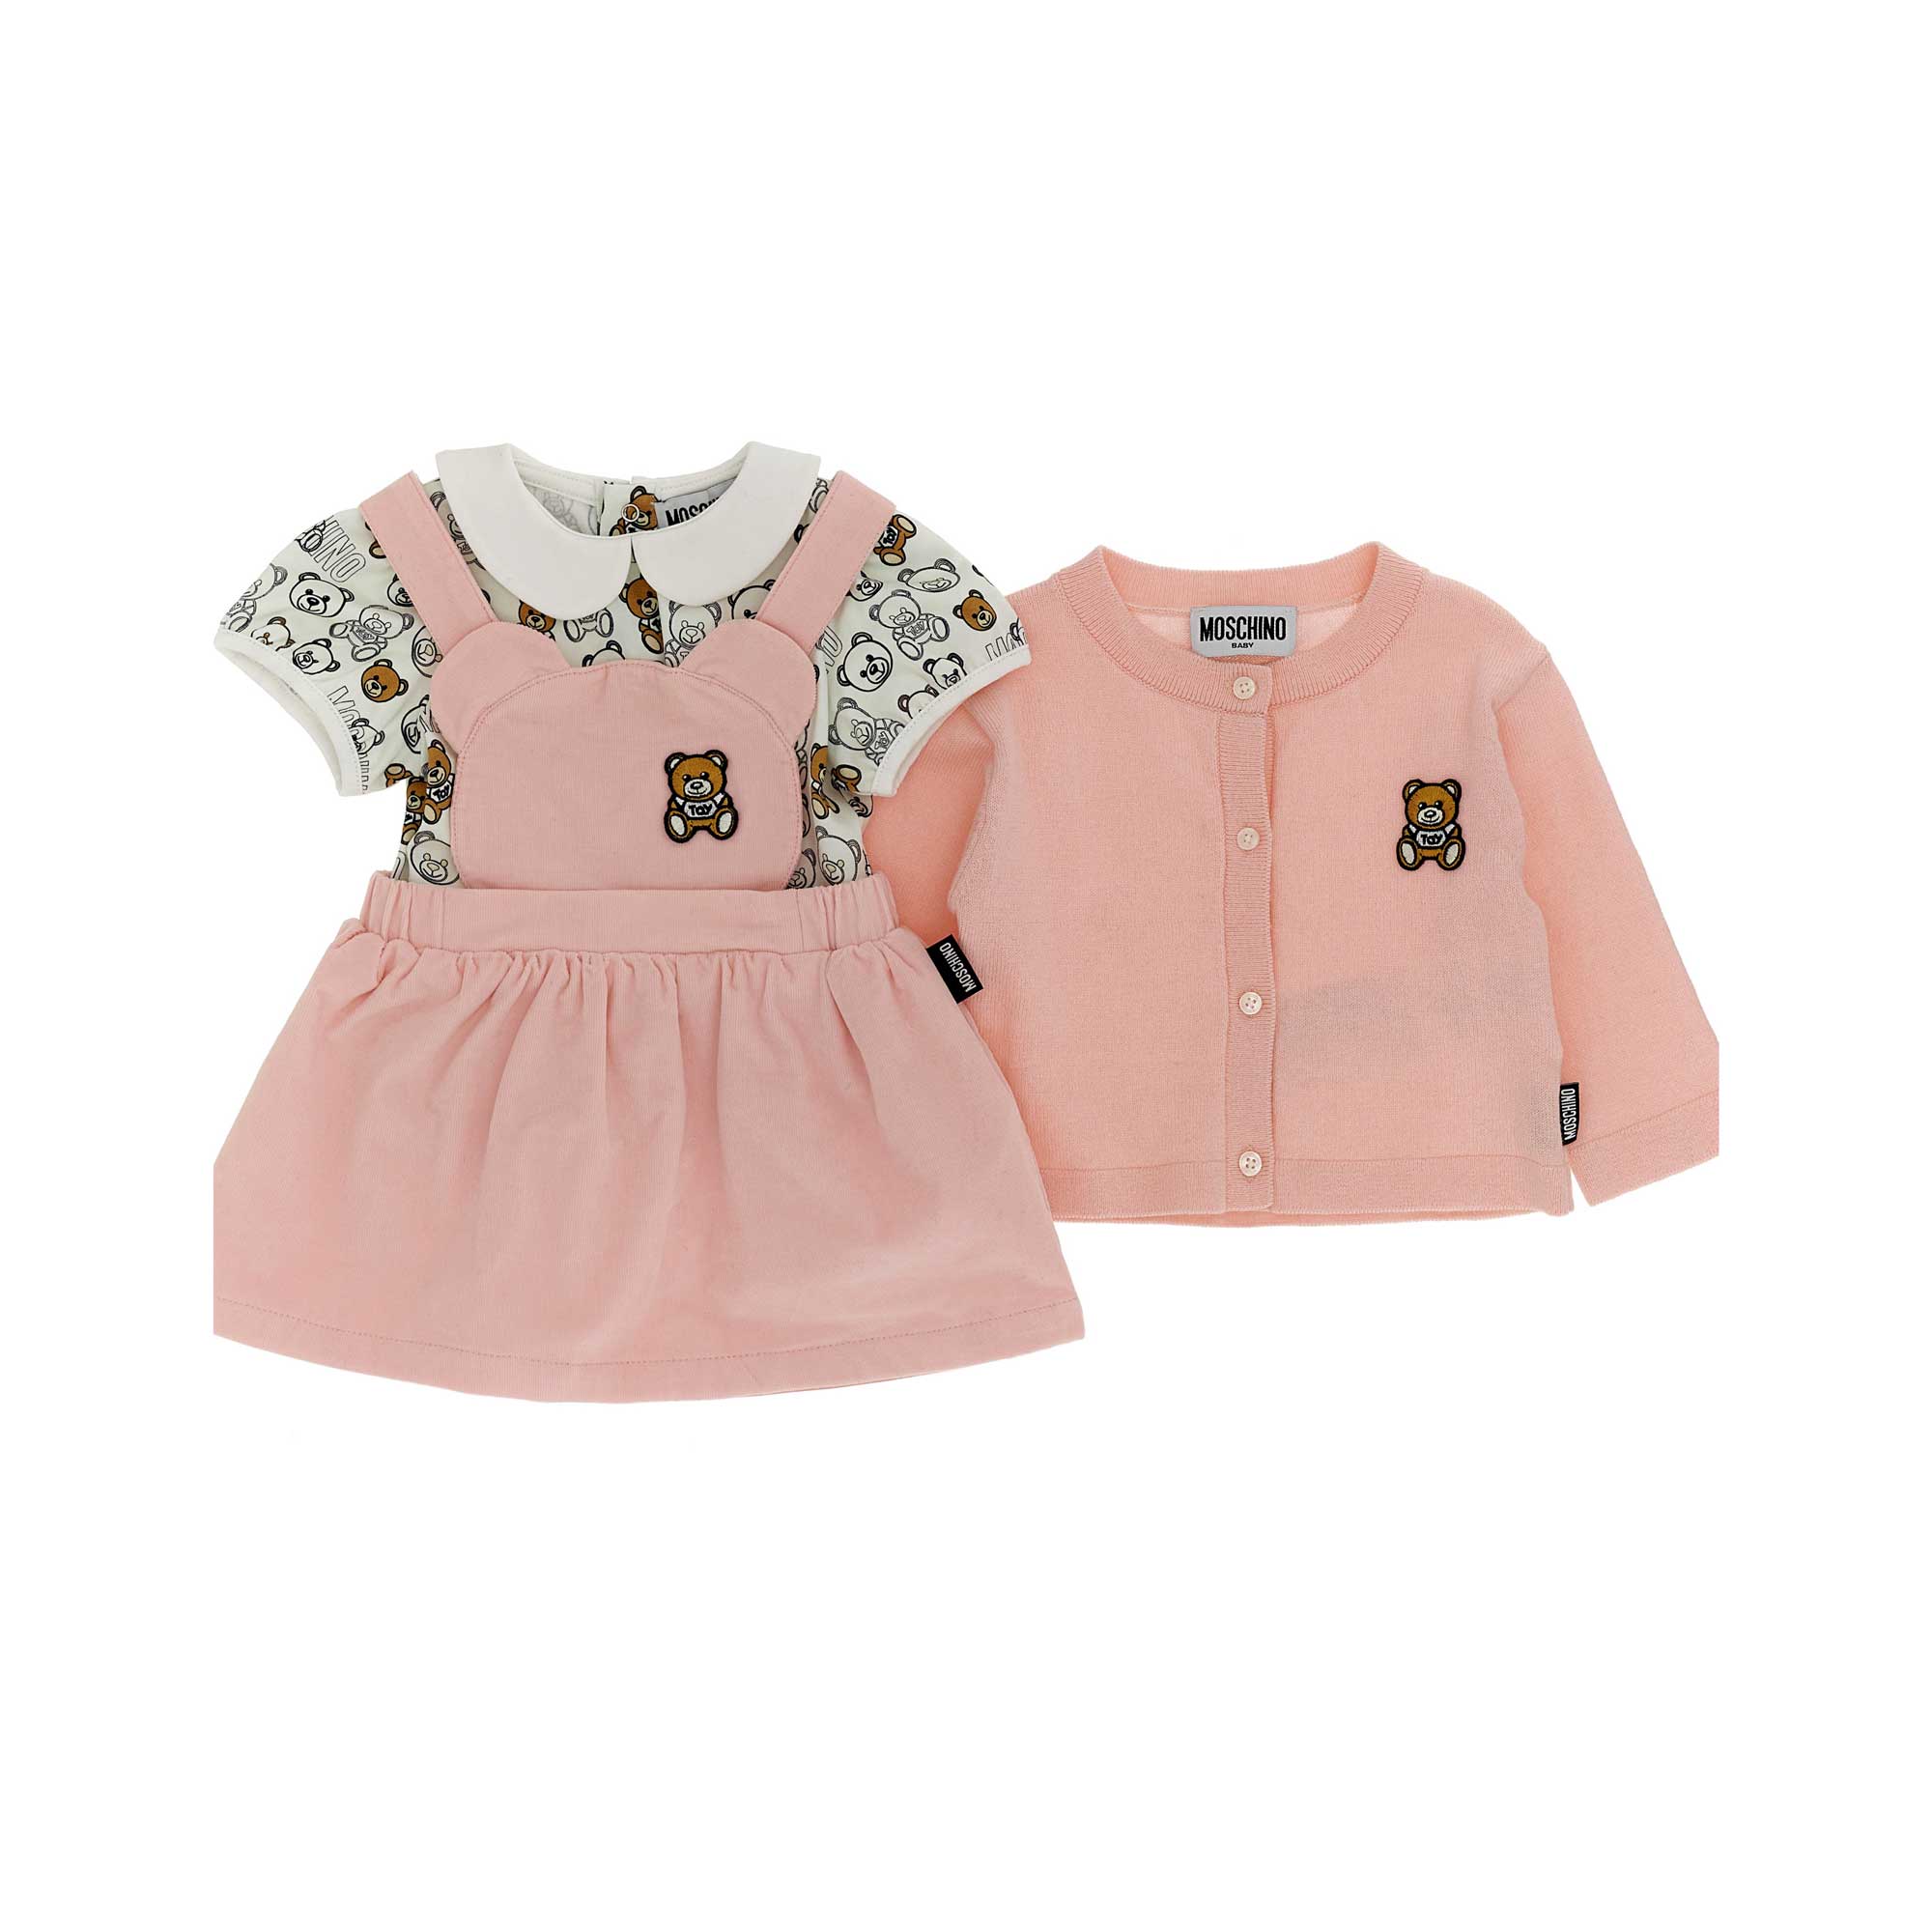 Baby Girls Pink Gift Set